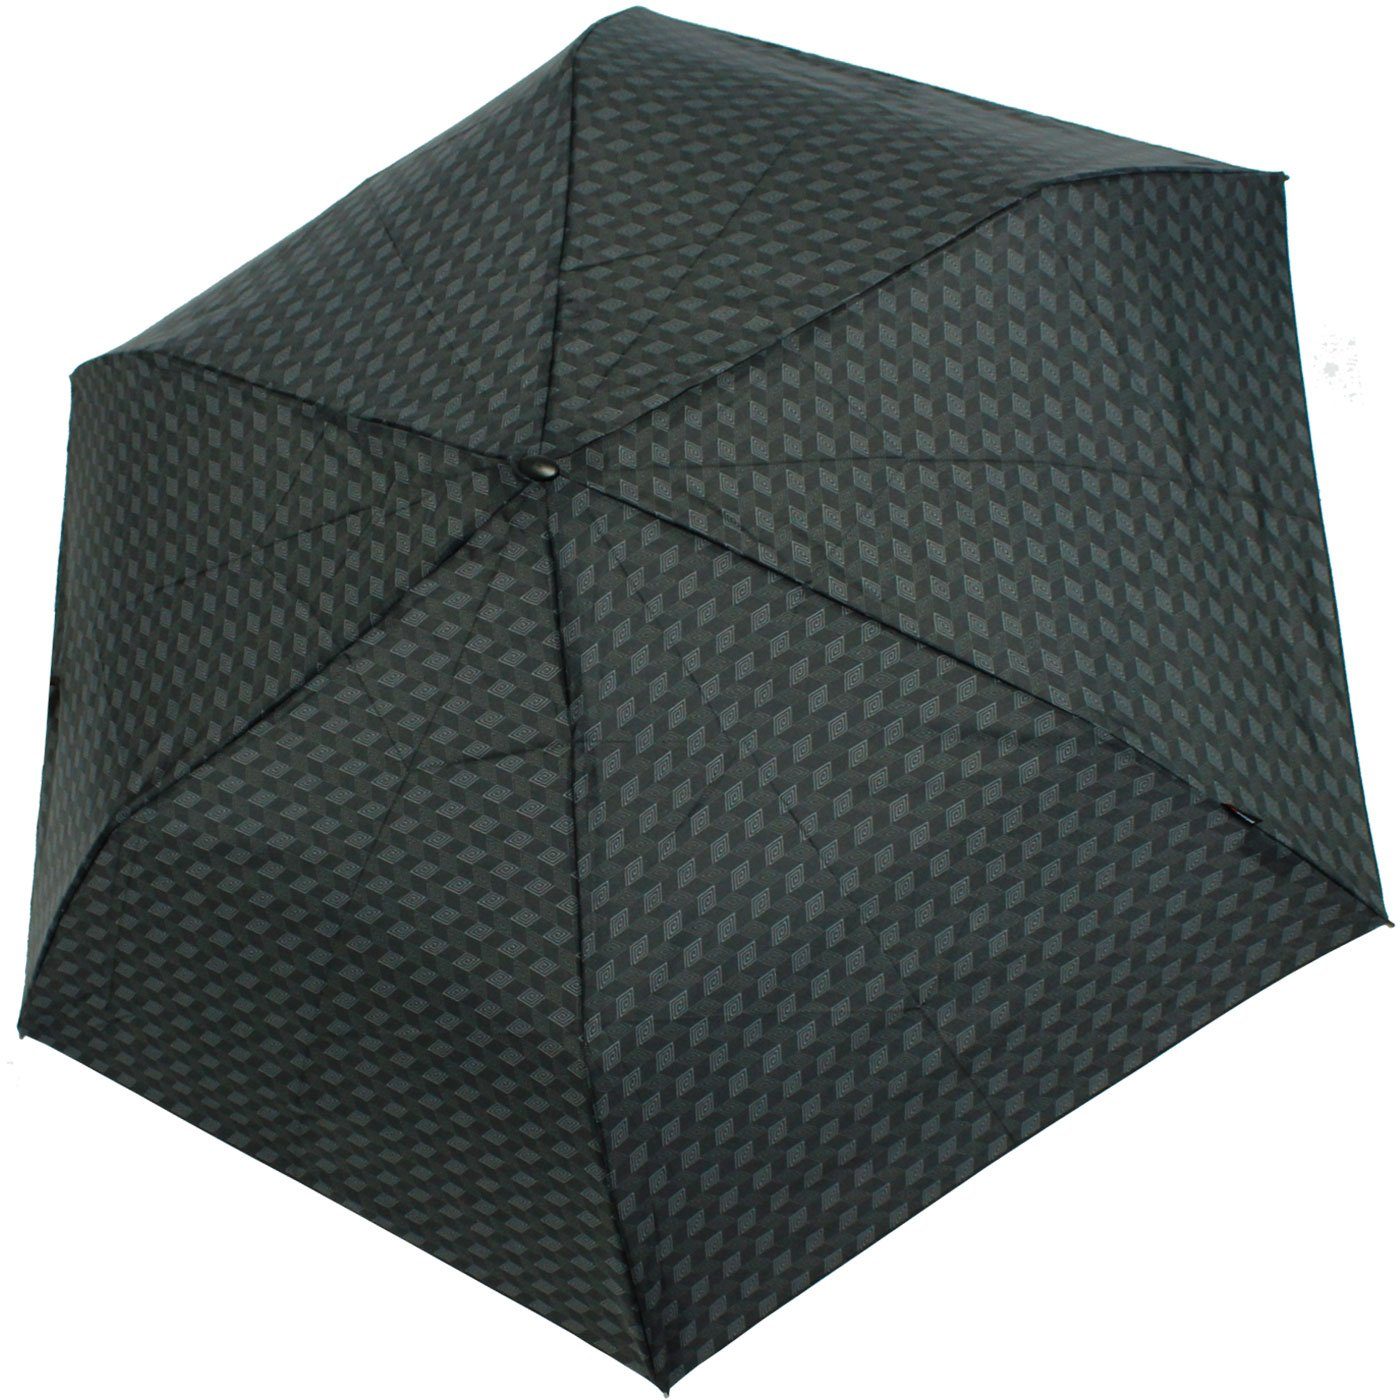 jede stabiler flacher, Begleiter, Taschenregenschirm für Notfall Schirm, jeden für ein passend treuer Knirps® Tasche,